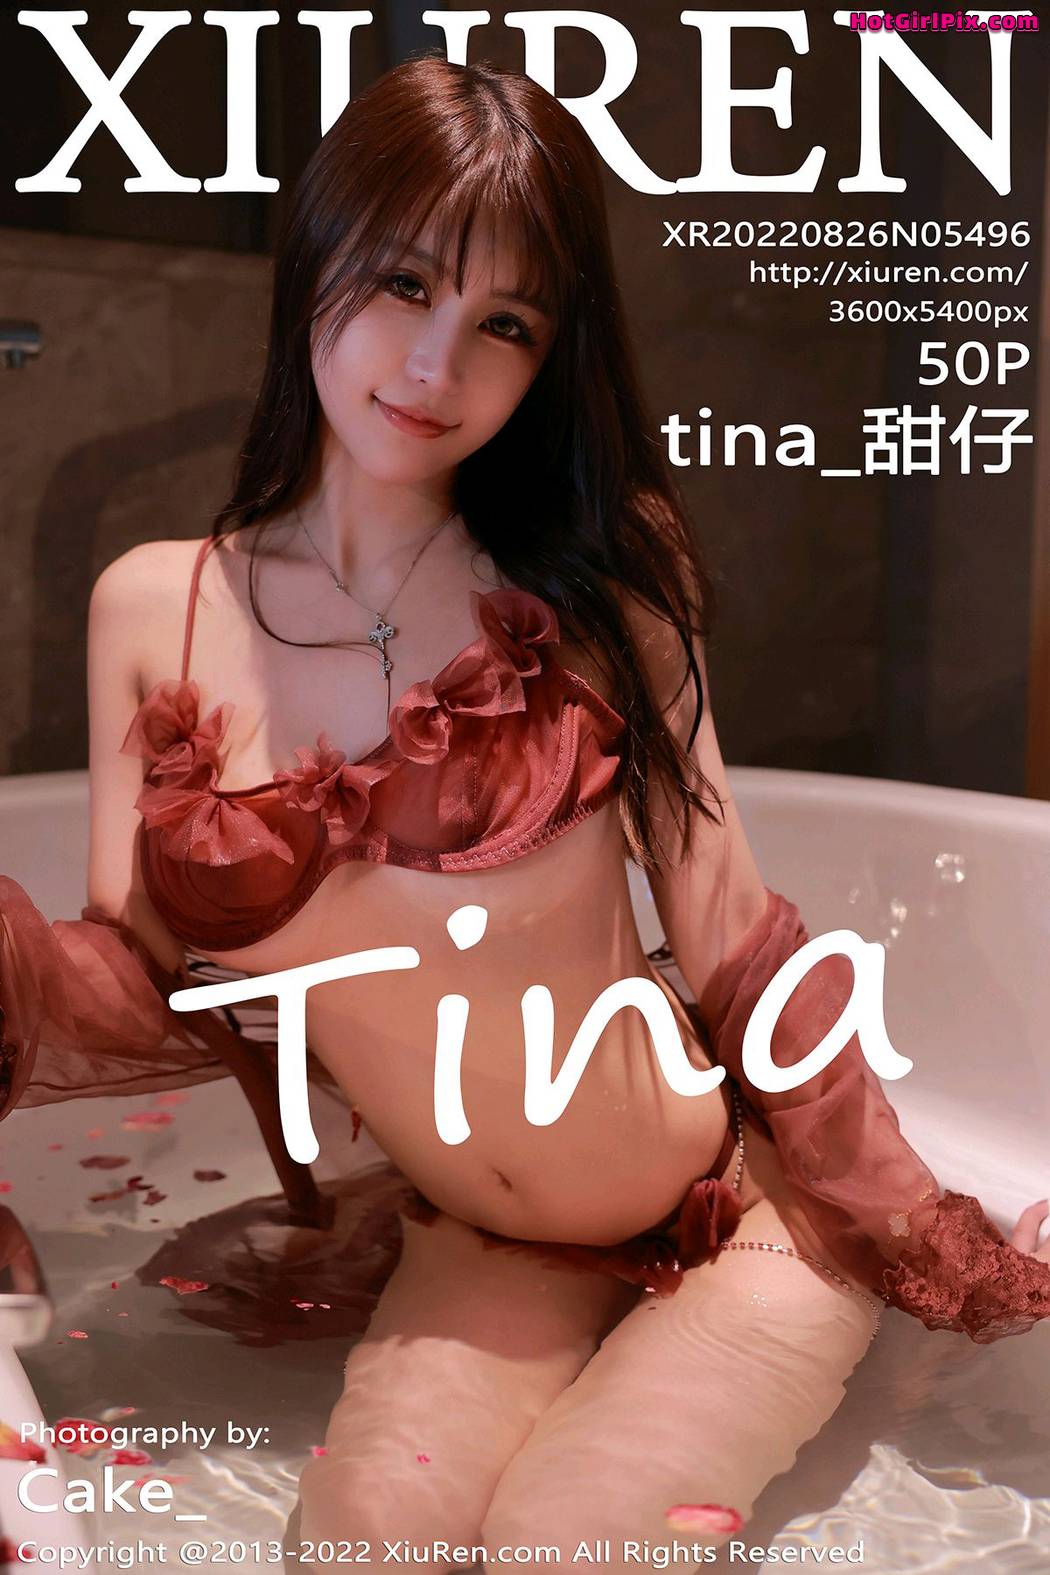 [XIUREN] No.5496 tina_甜仔 Cover Photo